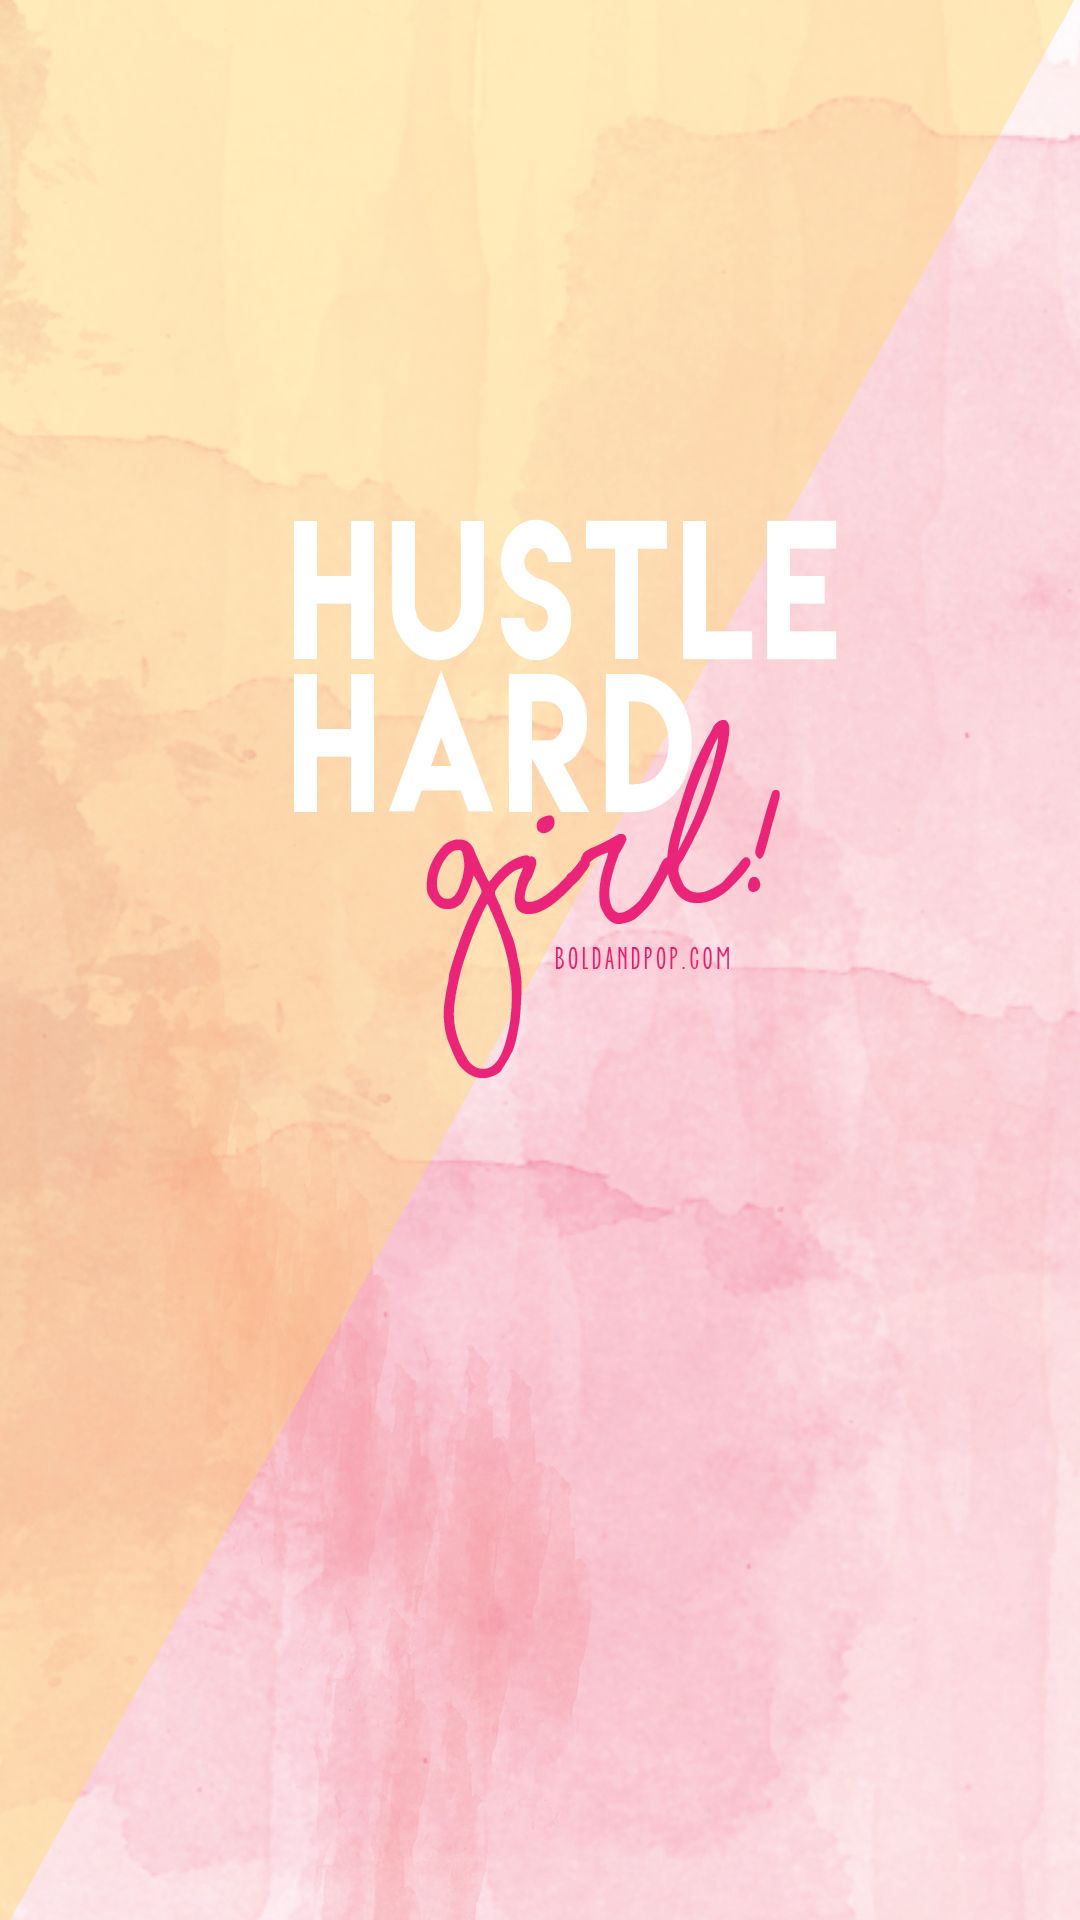 HD hustle wallpapers | Peakpx